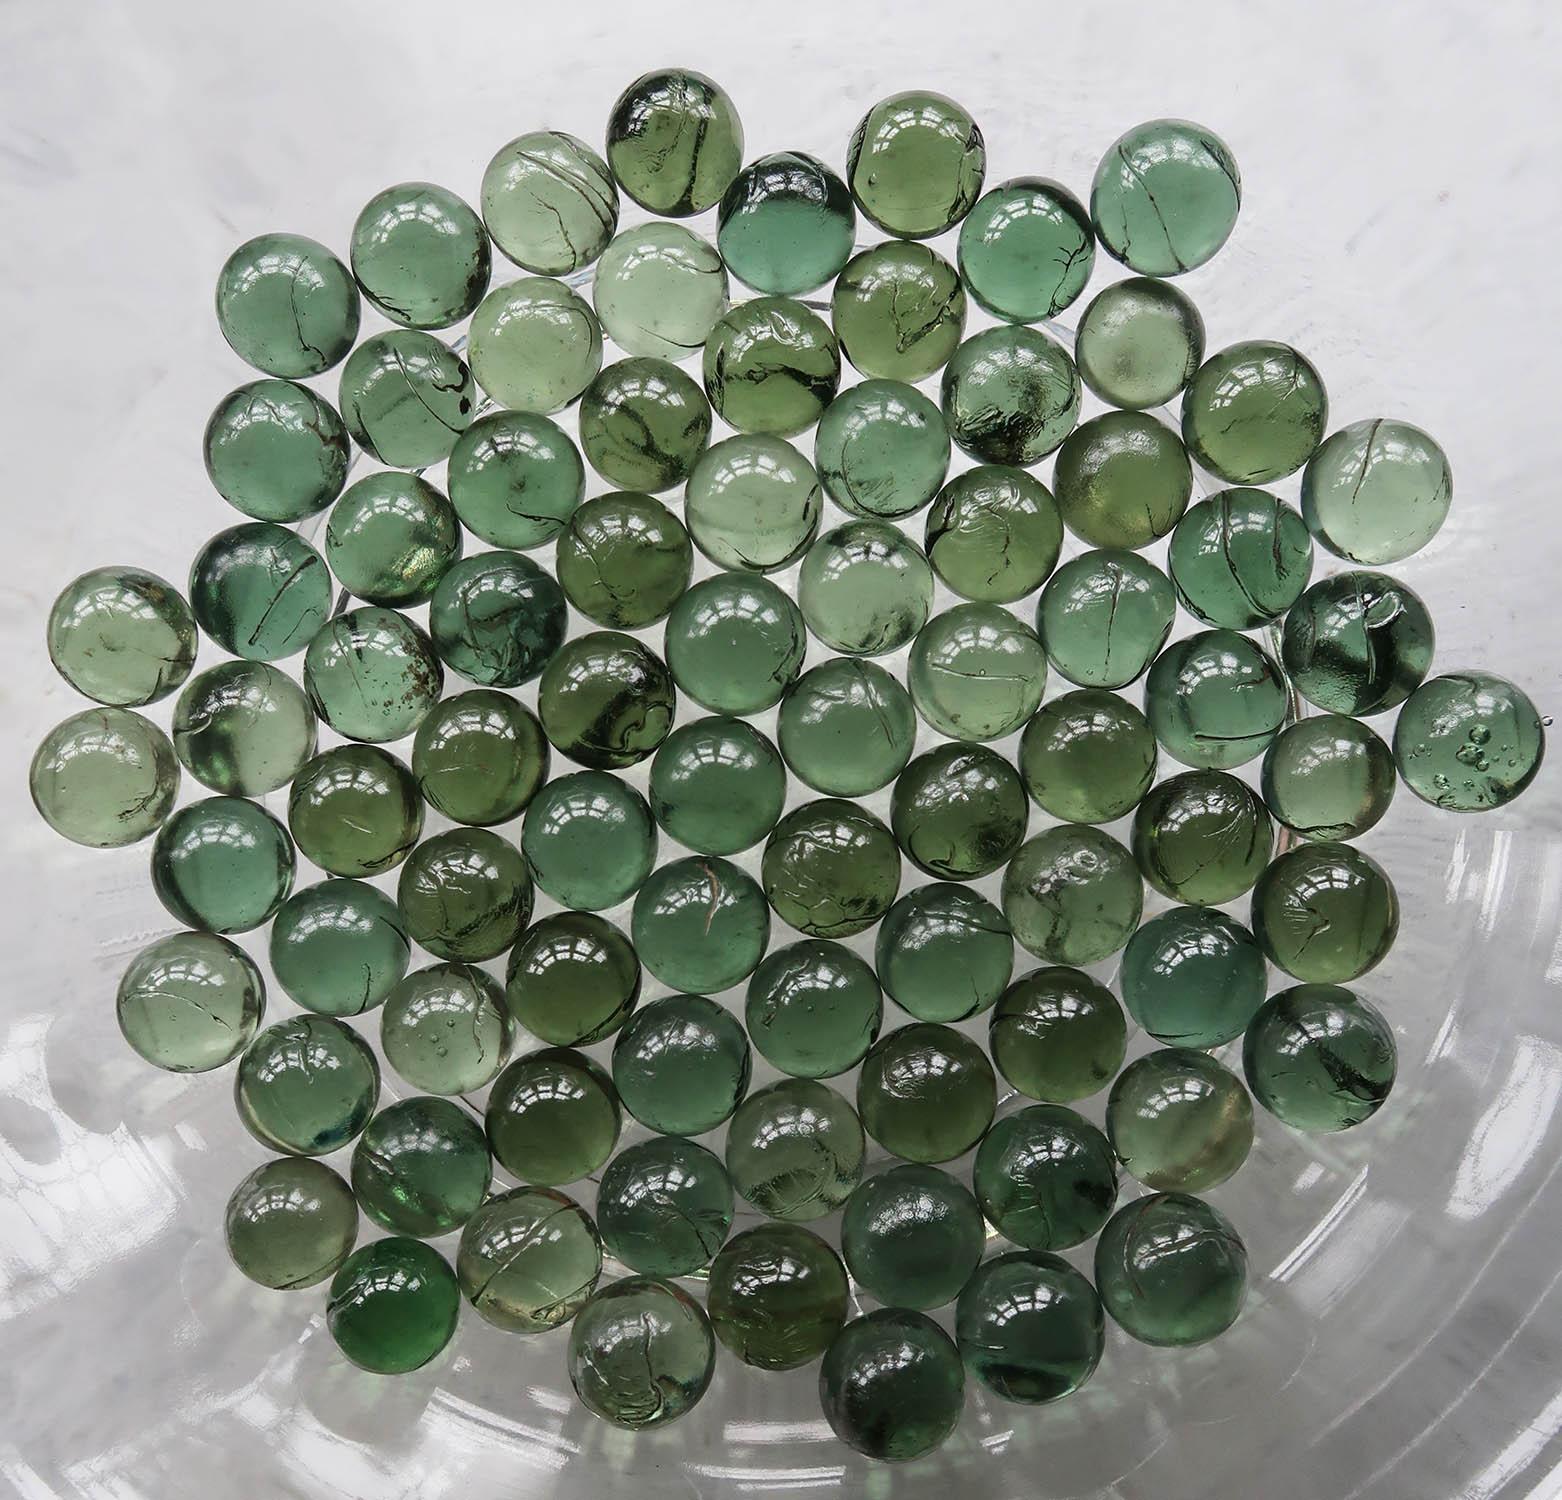 Wunderschöne Sammlung von 83 grünen Glasmurmeln

Erstaunliche Farben

Guter Zustand. 

Die angegebene Größe ist für eine Murmel

